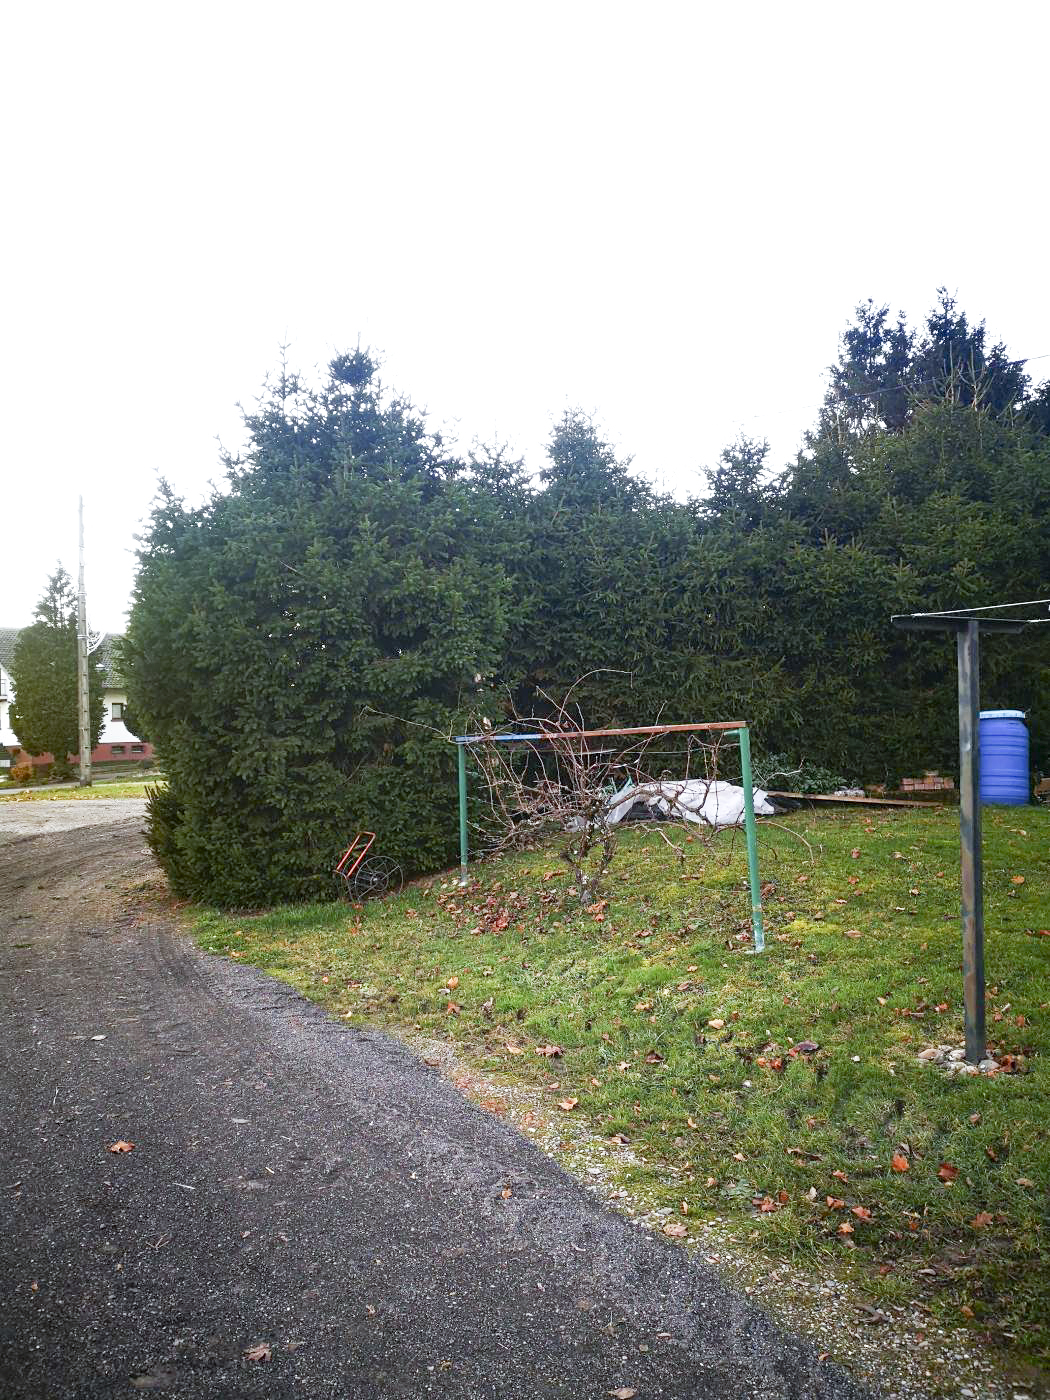 Ligne Maginot - W1 - (Chambre de coupure) - La chambre de coupure se trouvait juste derrière la haie. 
Elle a aujourd'hui disparu, ensevelie. Elle se trouve au bout d'un jardin, dans une propriété privée.
Photo faite avec l'autorisation de la propriétaire.